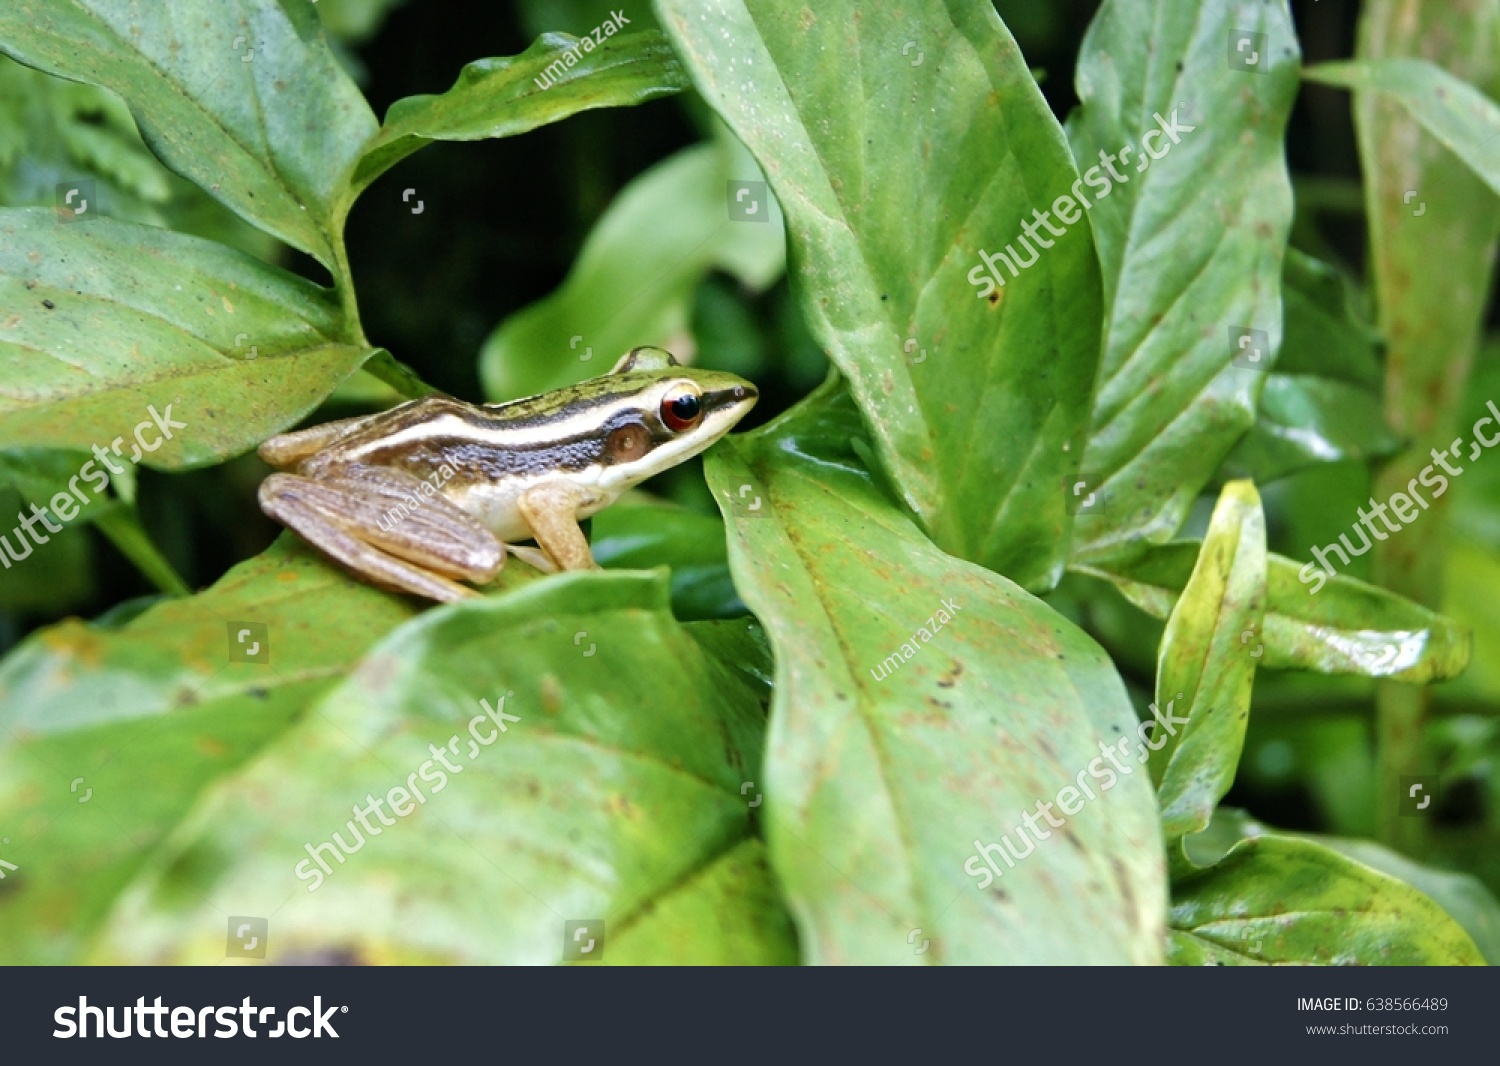 Frog on green leaf #638566489